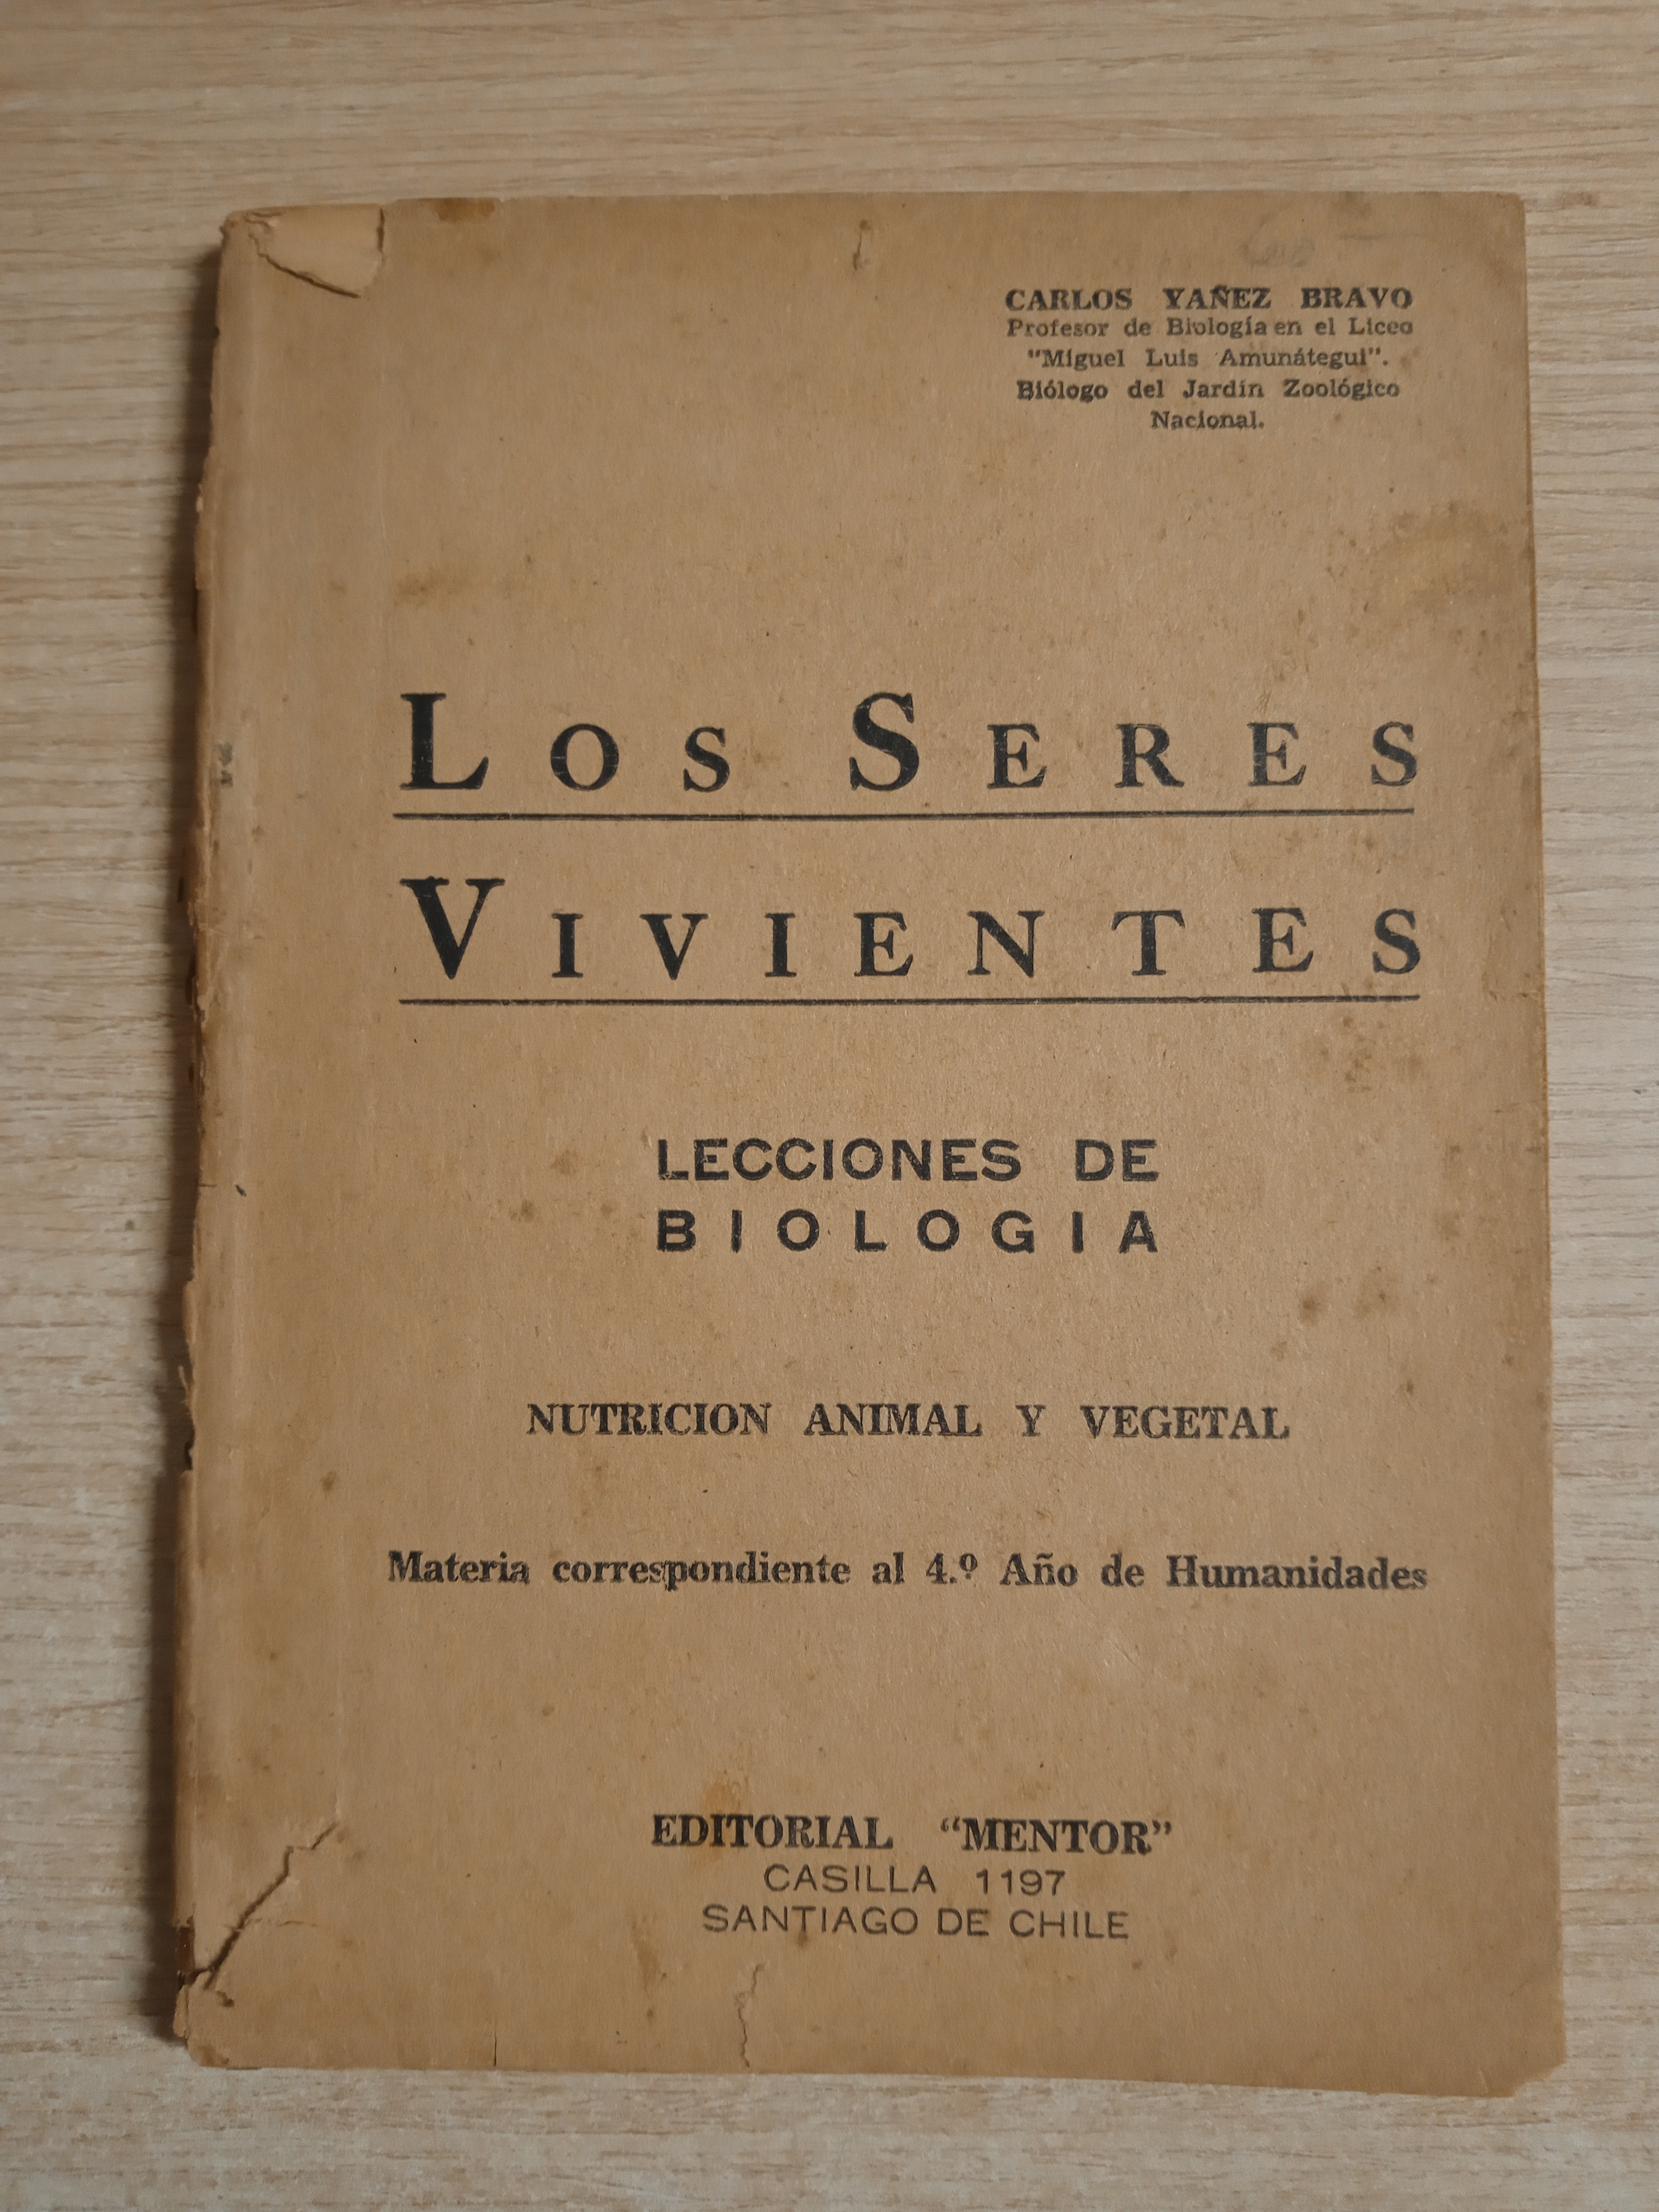 Los seres vivientes. Lecciones de biologia, nutricion animal y vegetal by  Yañez Bravo, carlos | Gibbon Libreria